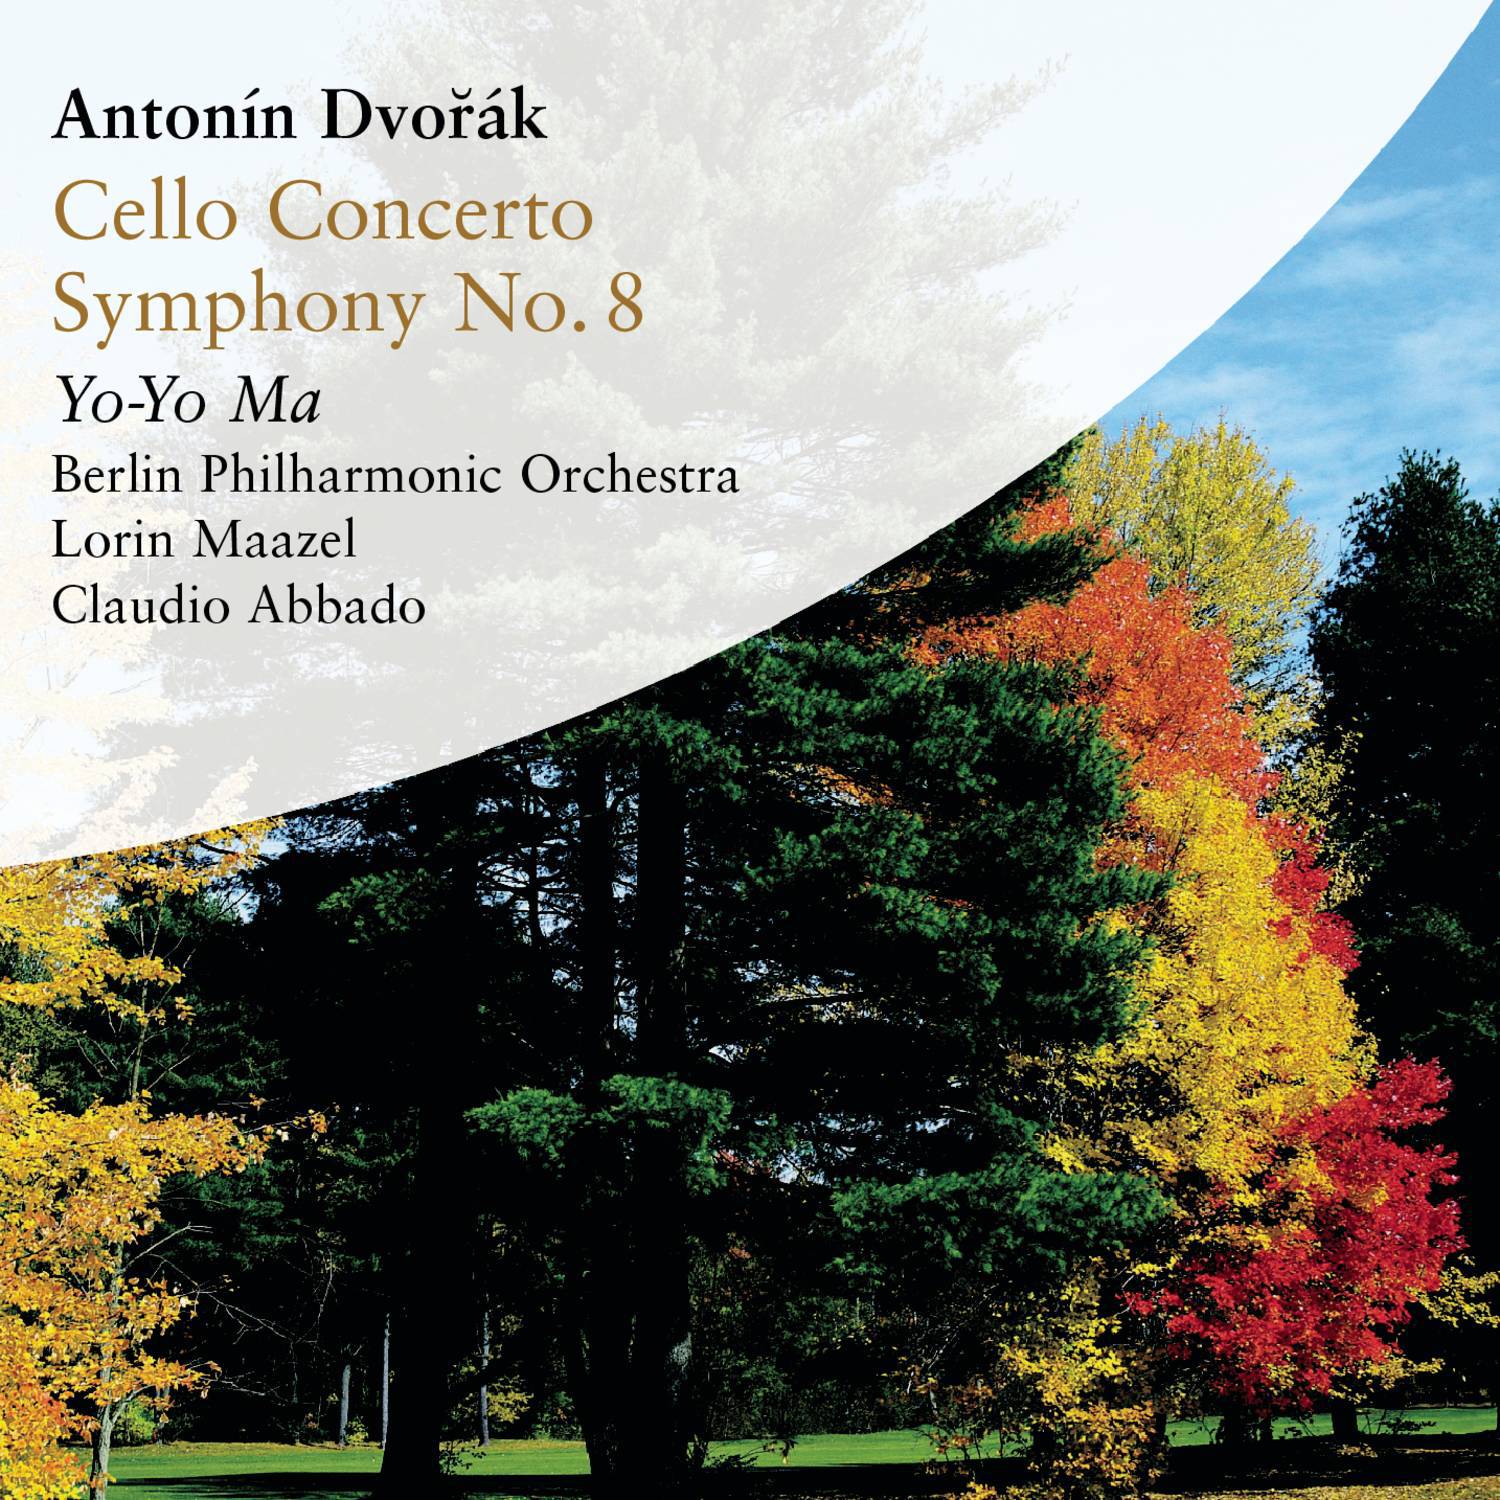 Antonin Dvorak - Cello Concerto, Symphony No. 8